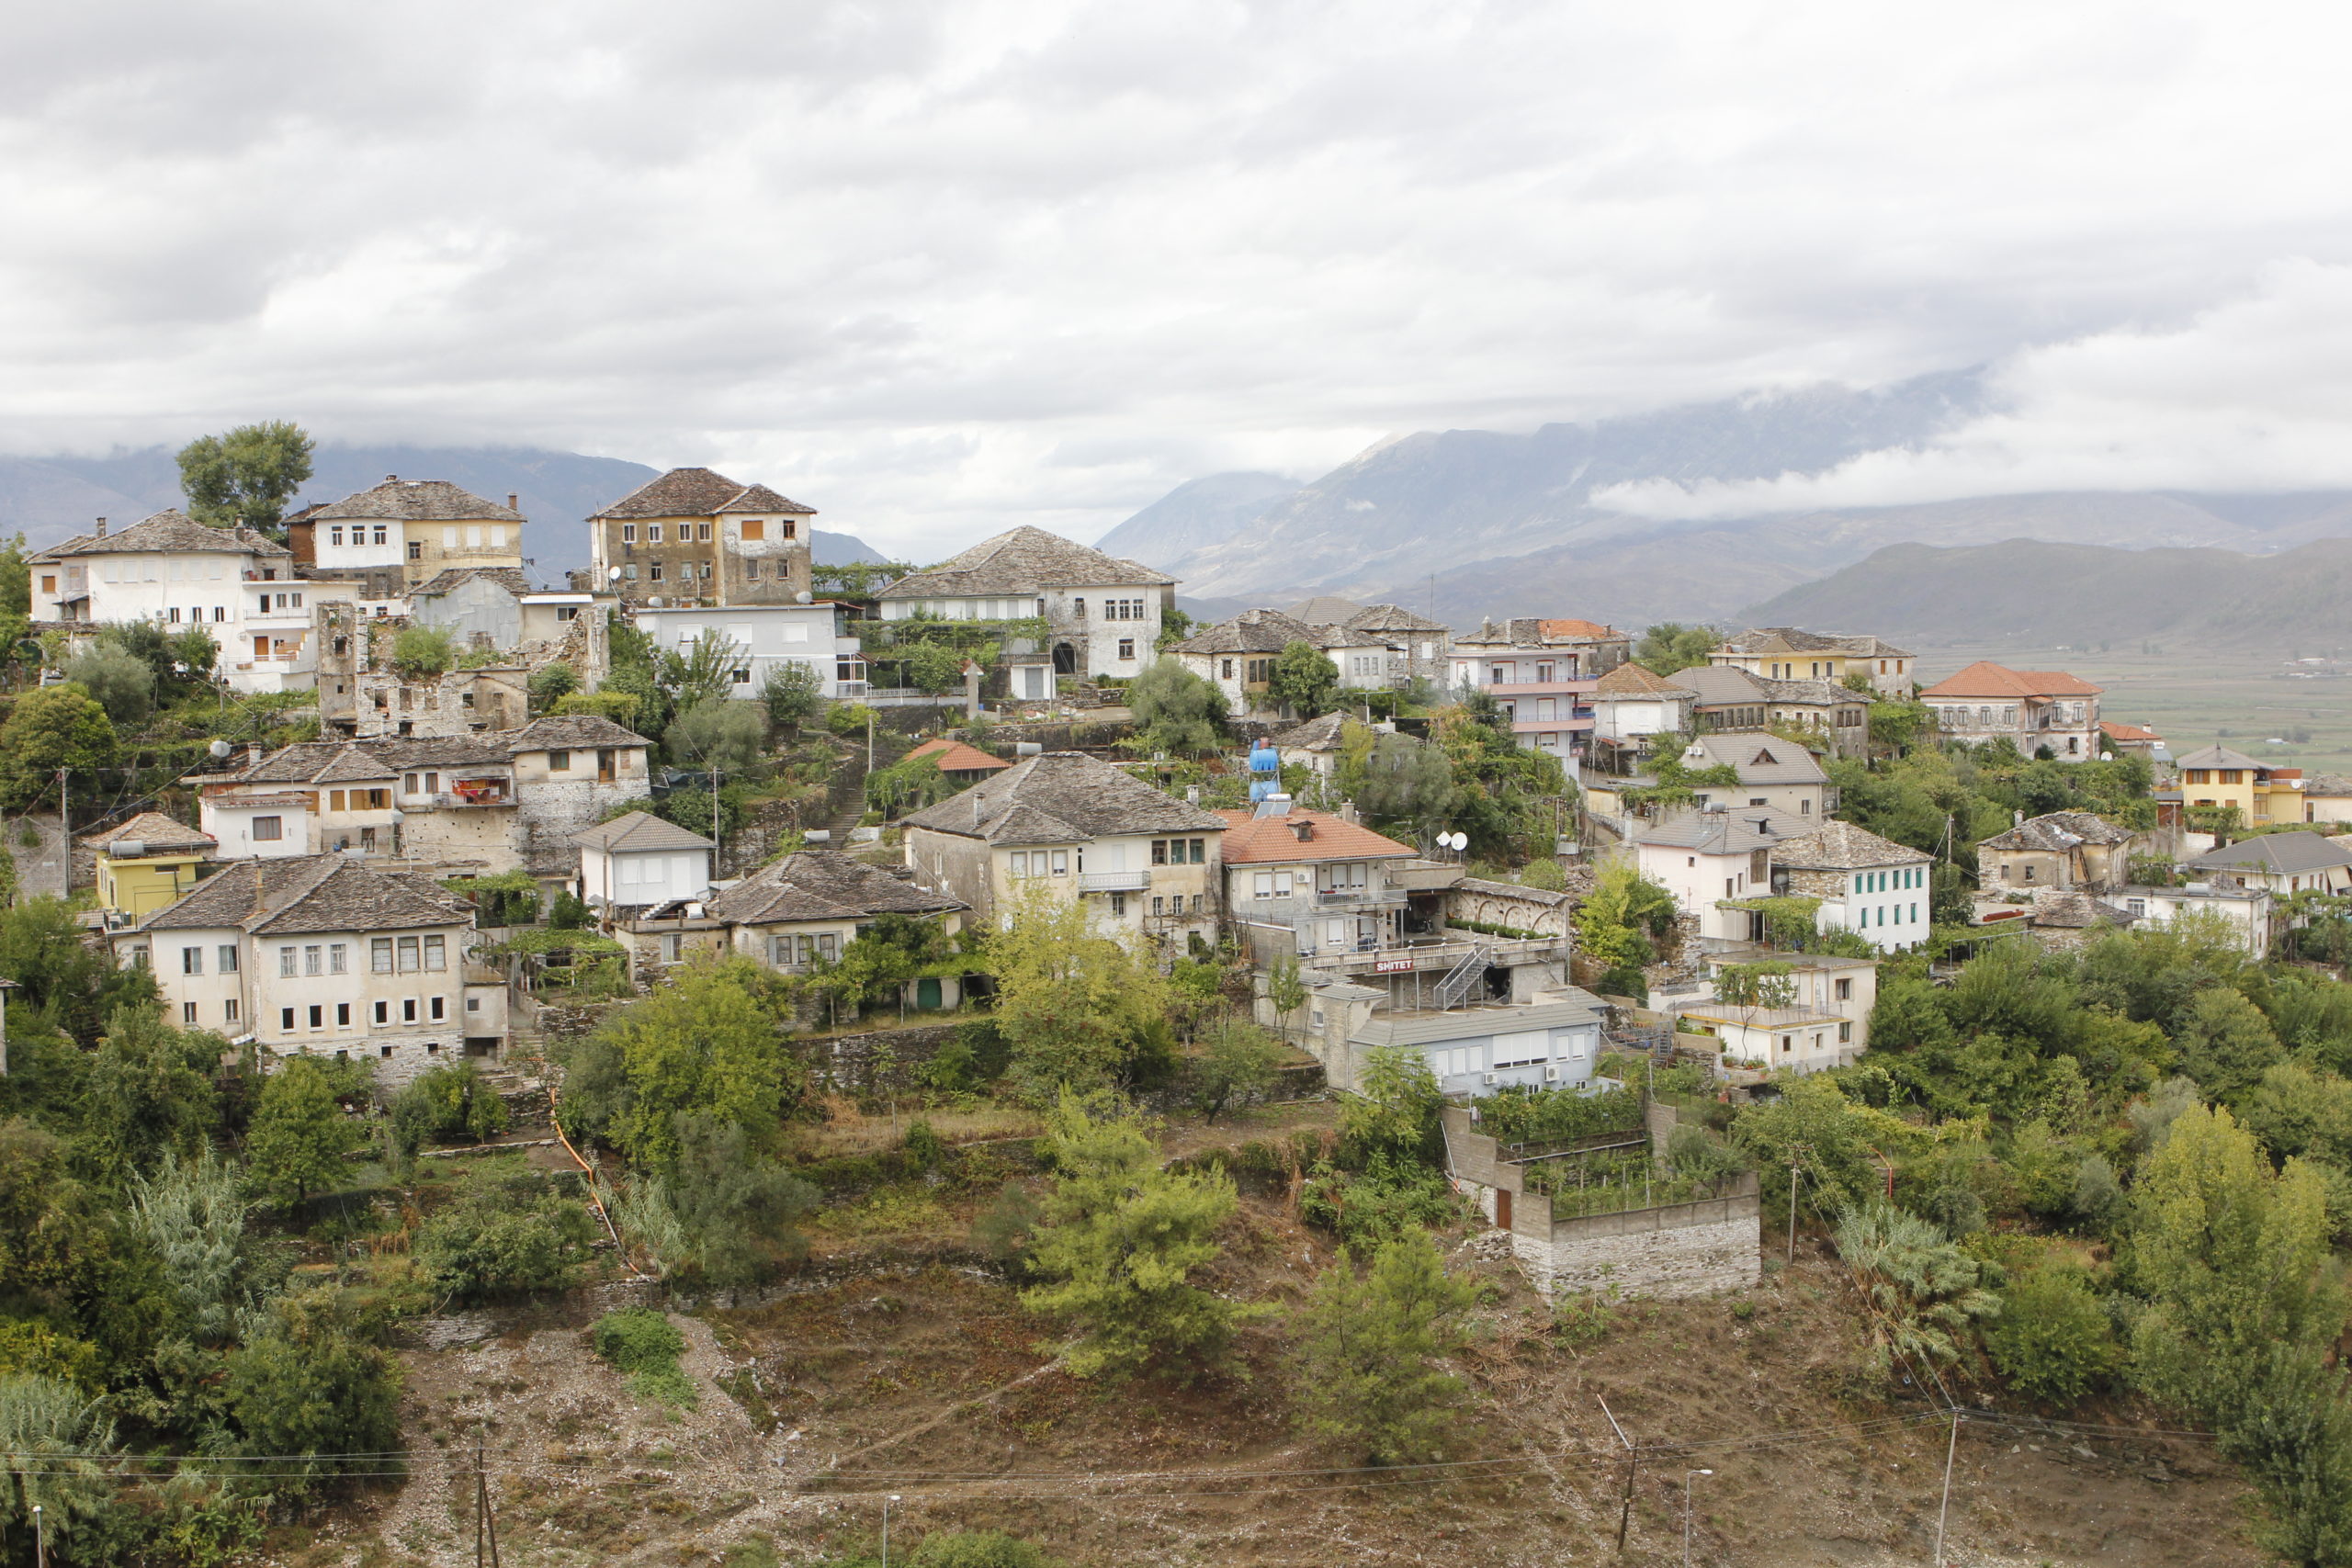 4x4 Abenteuerreise: Albanien so nah und doch so fremd 18